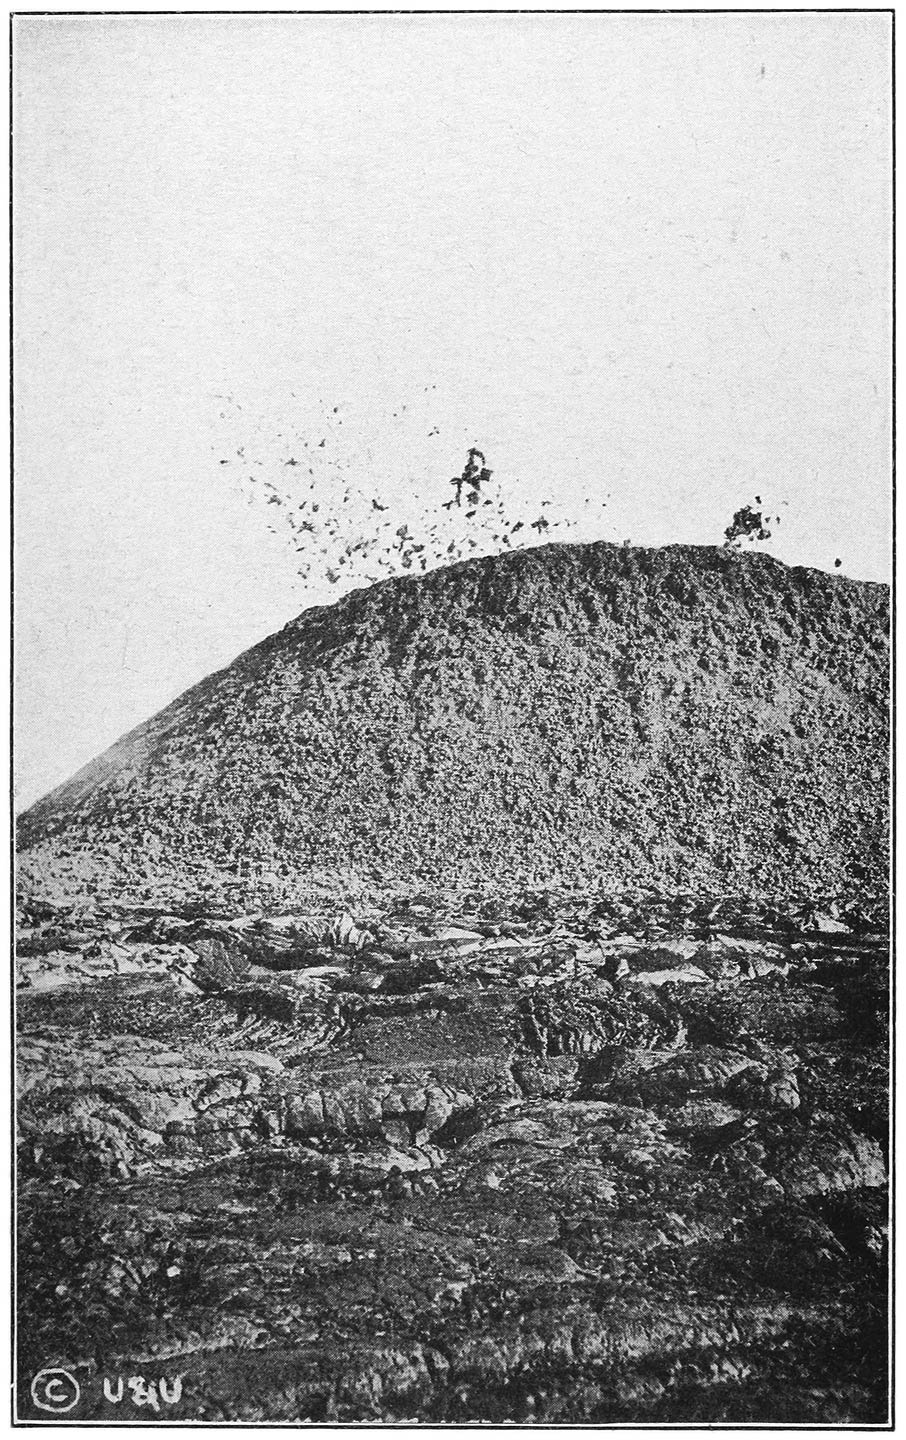 MOKUAWEOWEO, MAUNA LOA, IN ERUPTION, 1899